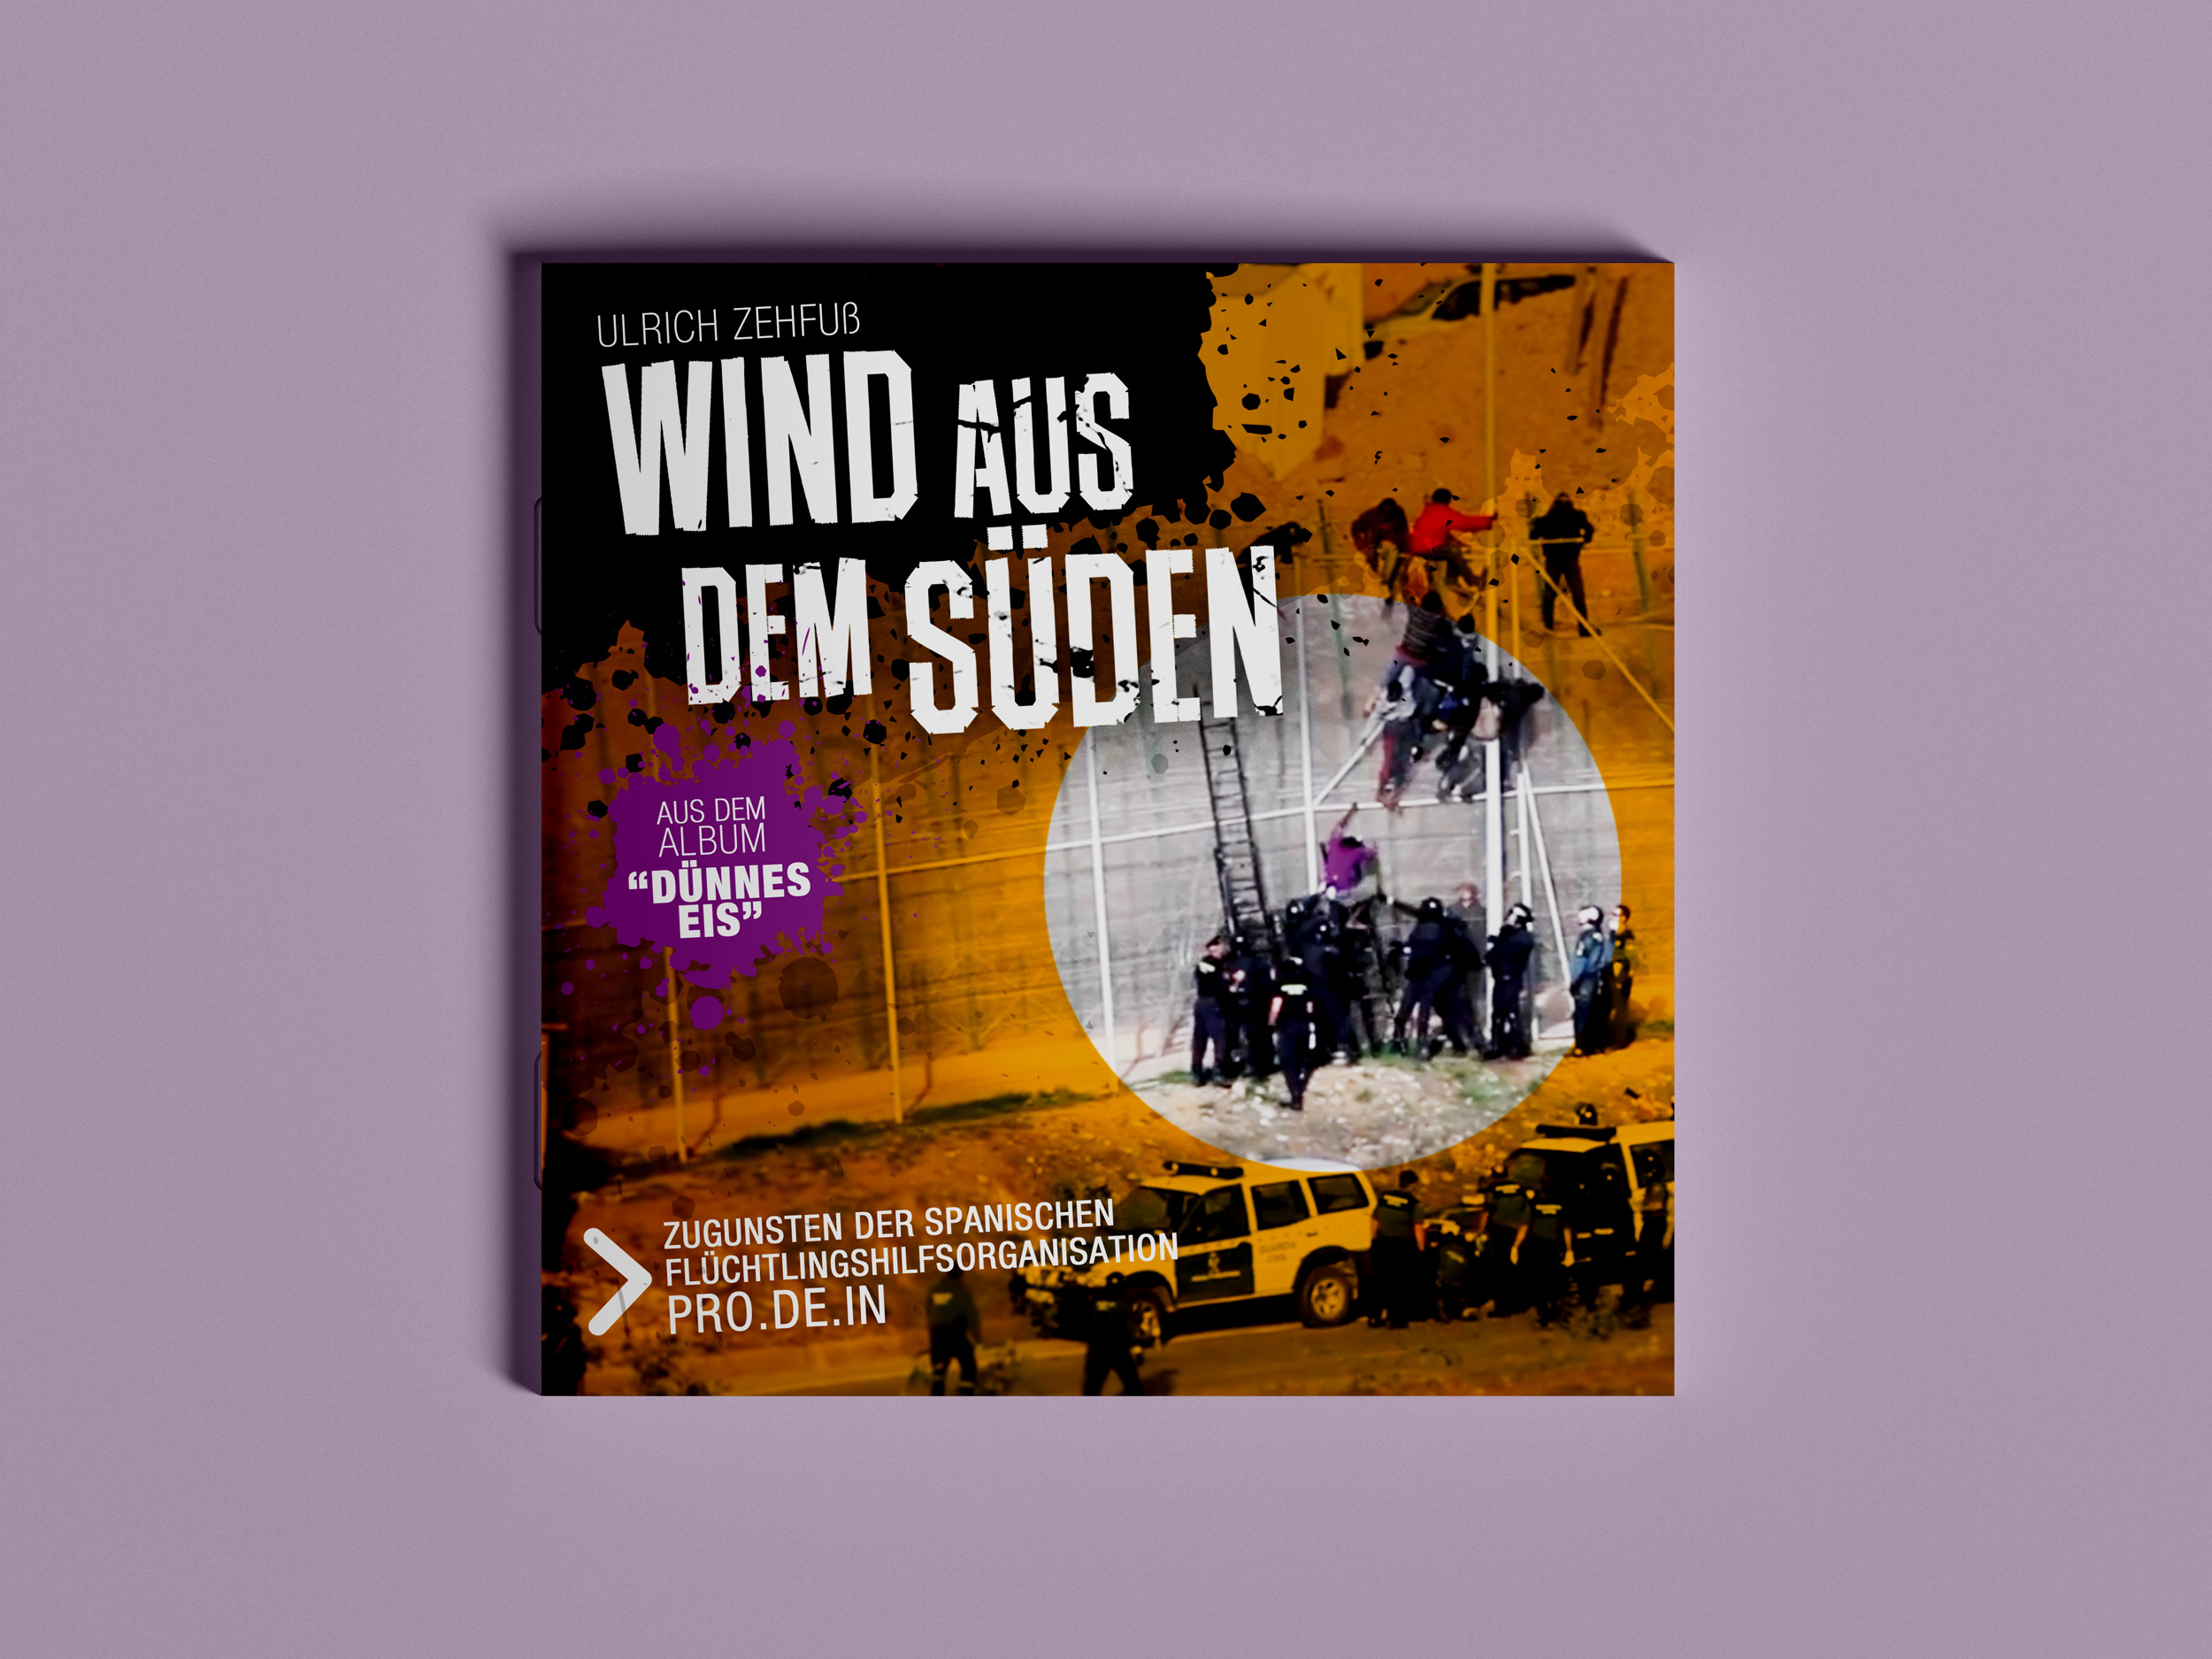 CD-Cover "Wind aus dem Süden", Ulrich Zehfuss